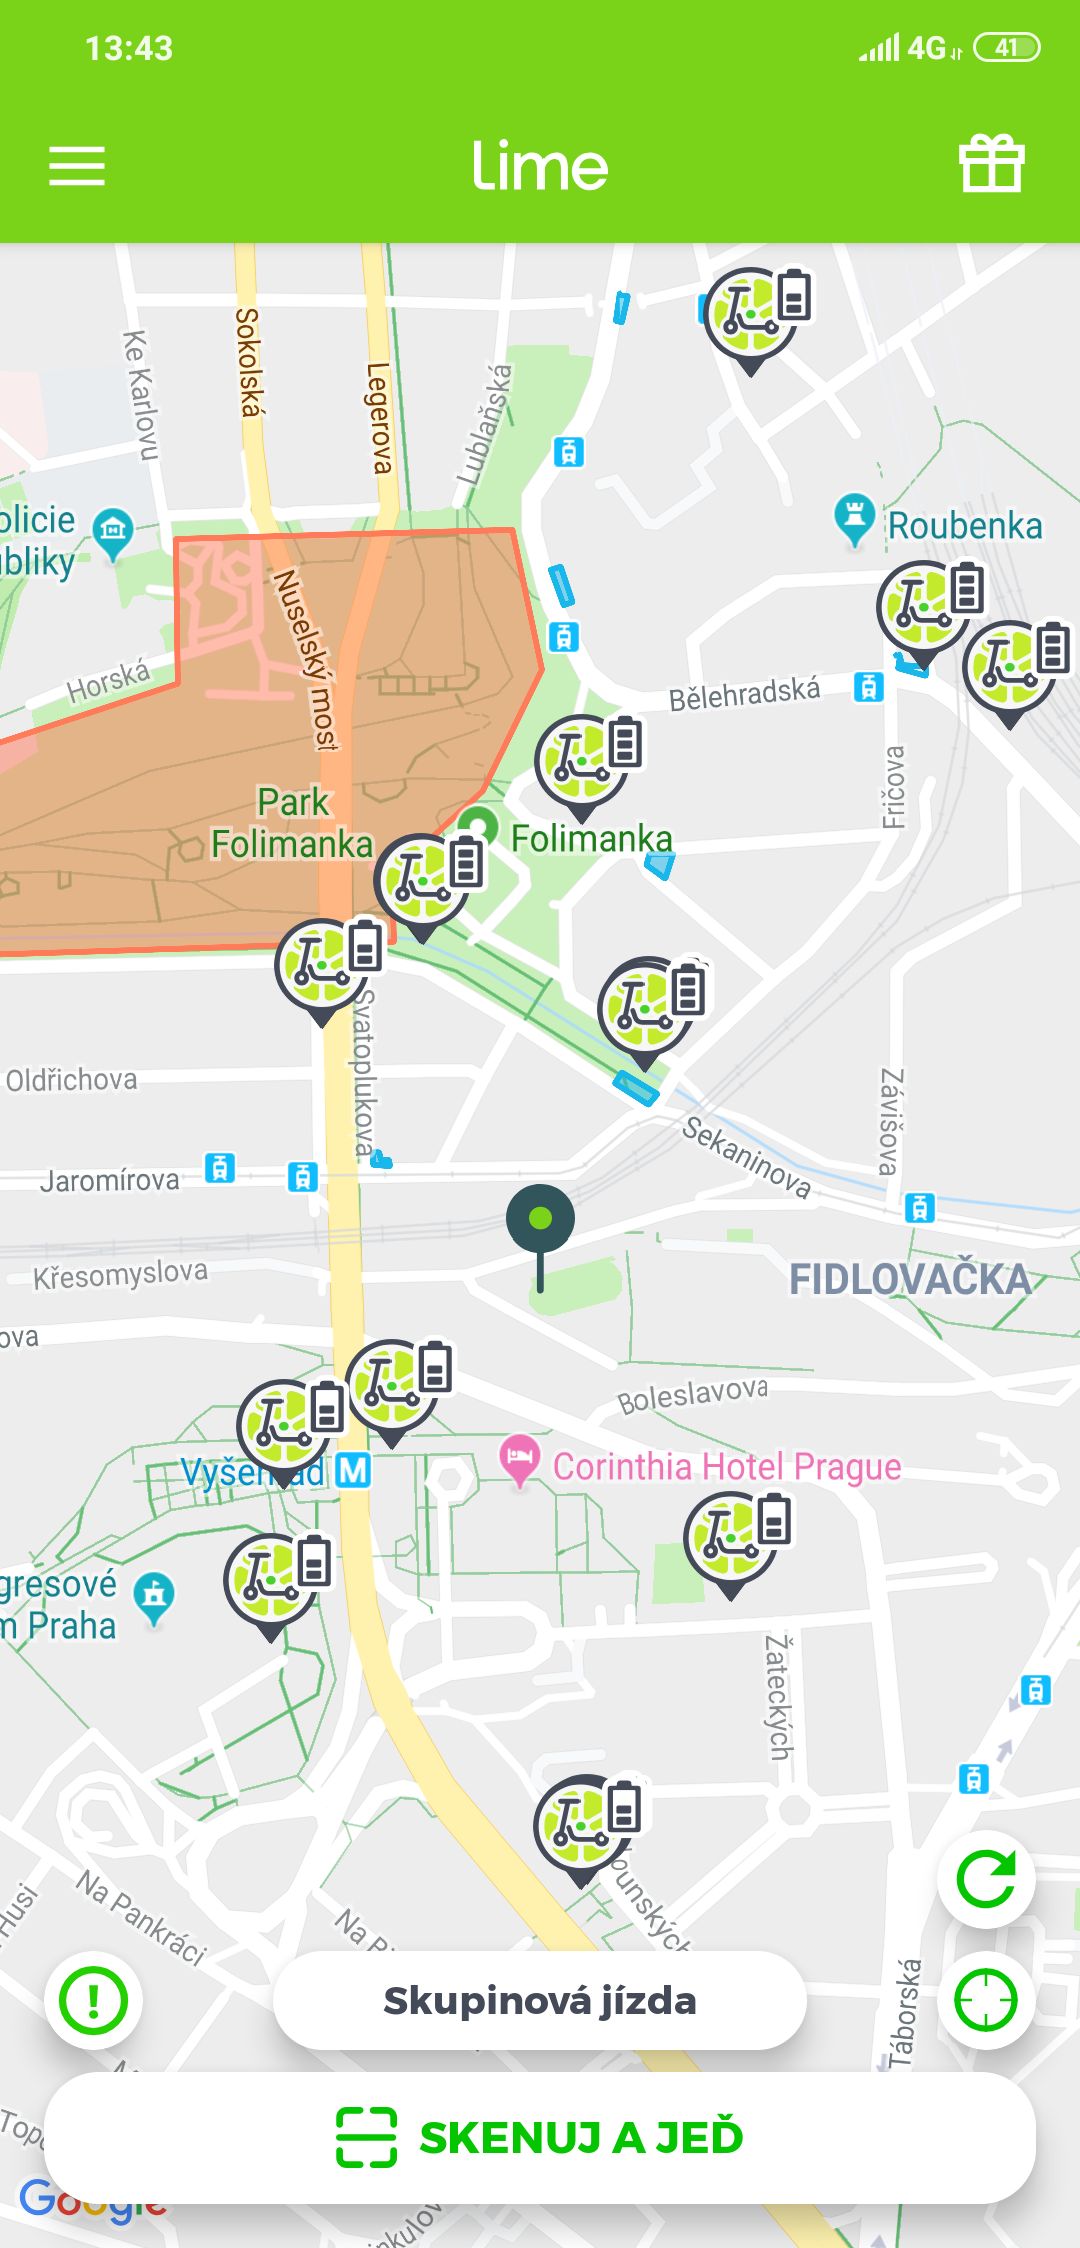 Lime bude v Praze stovkou pokutovat své vlastní uživatele. Chce, aby parkovali tam, kde mají